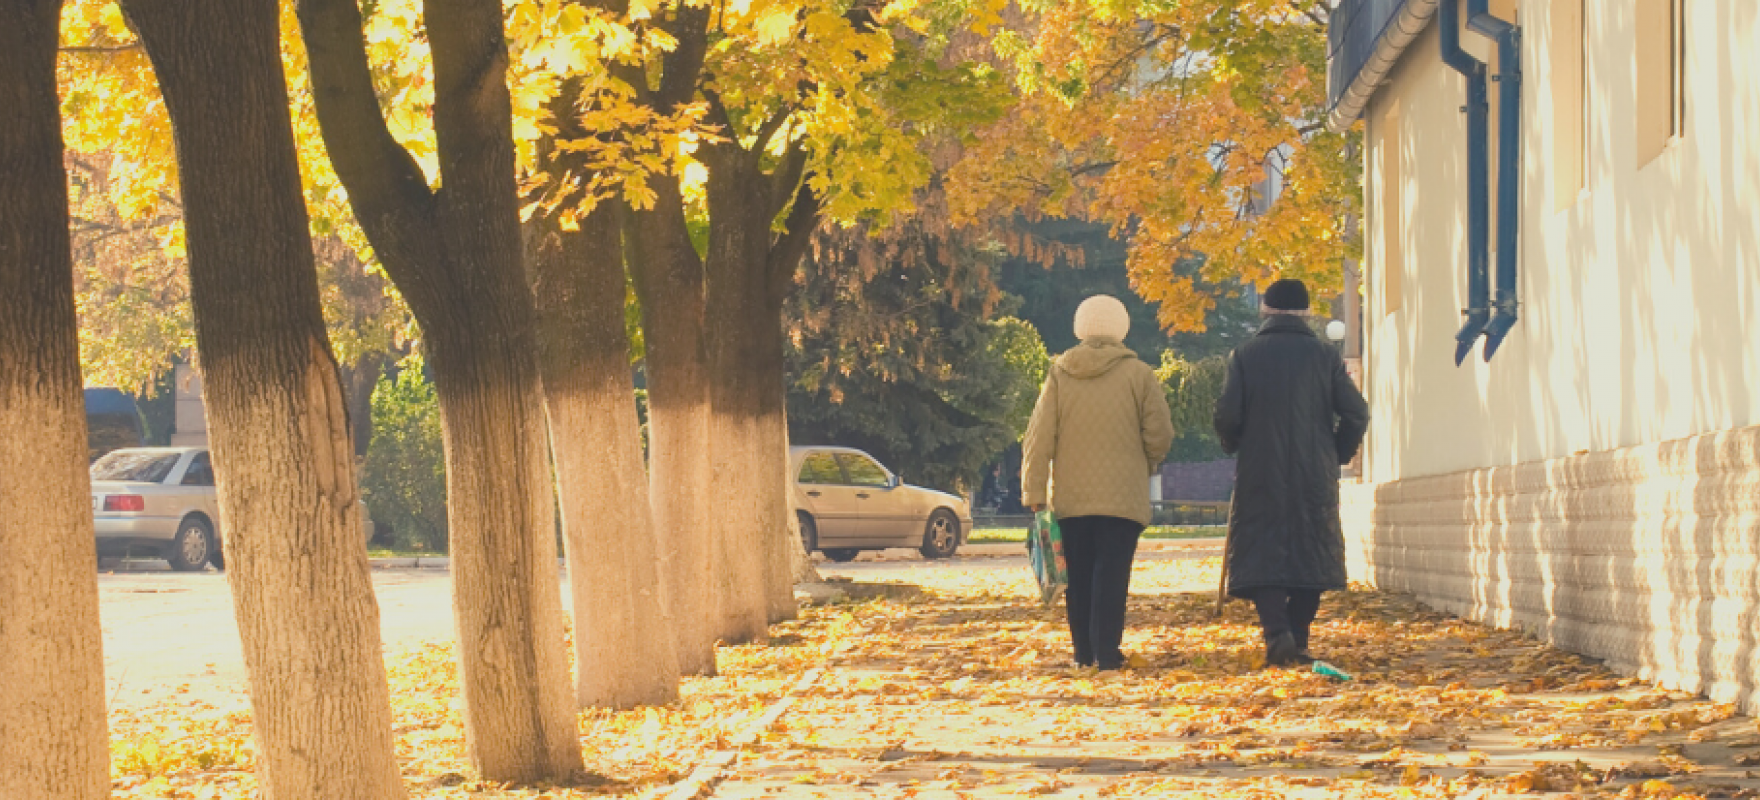 Kaks vanemat inimest jalutavad kõnniteel